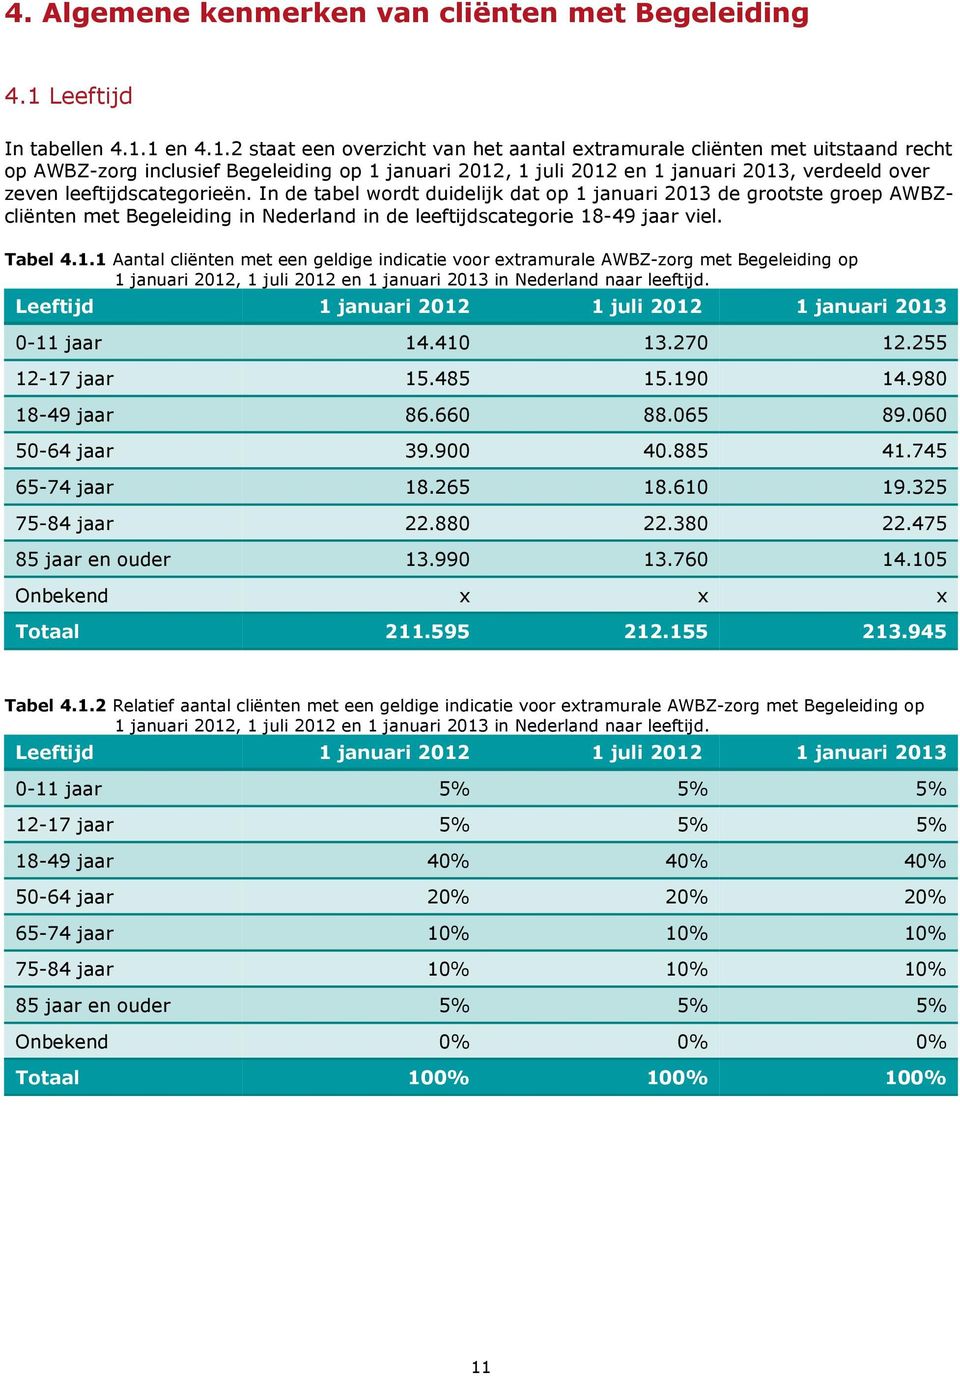 1 en 4.1.2 staat een overzicht van het aantal extramurale met uitstaand recht op AWBZ-zorg inclusief Begeleiding op 1 januari 2012, 1 juli 2012 en 1 januari 2013, verdeeld over zeven leeftijdscategorieën.